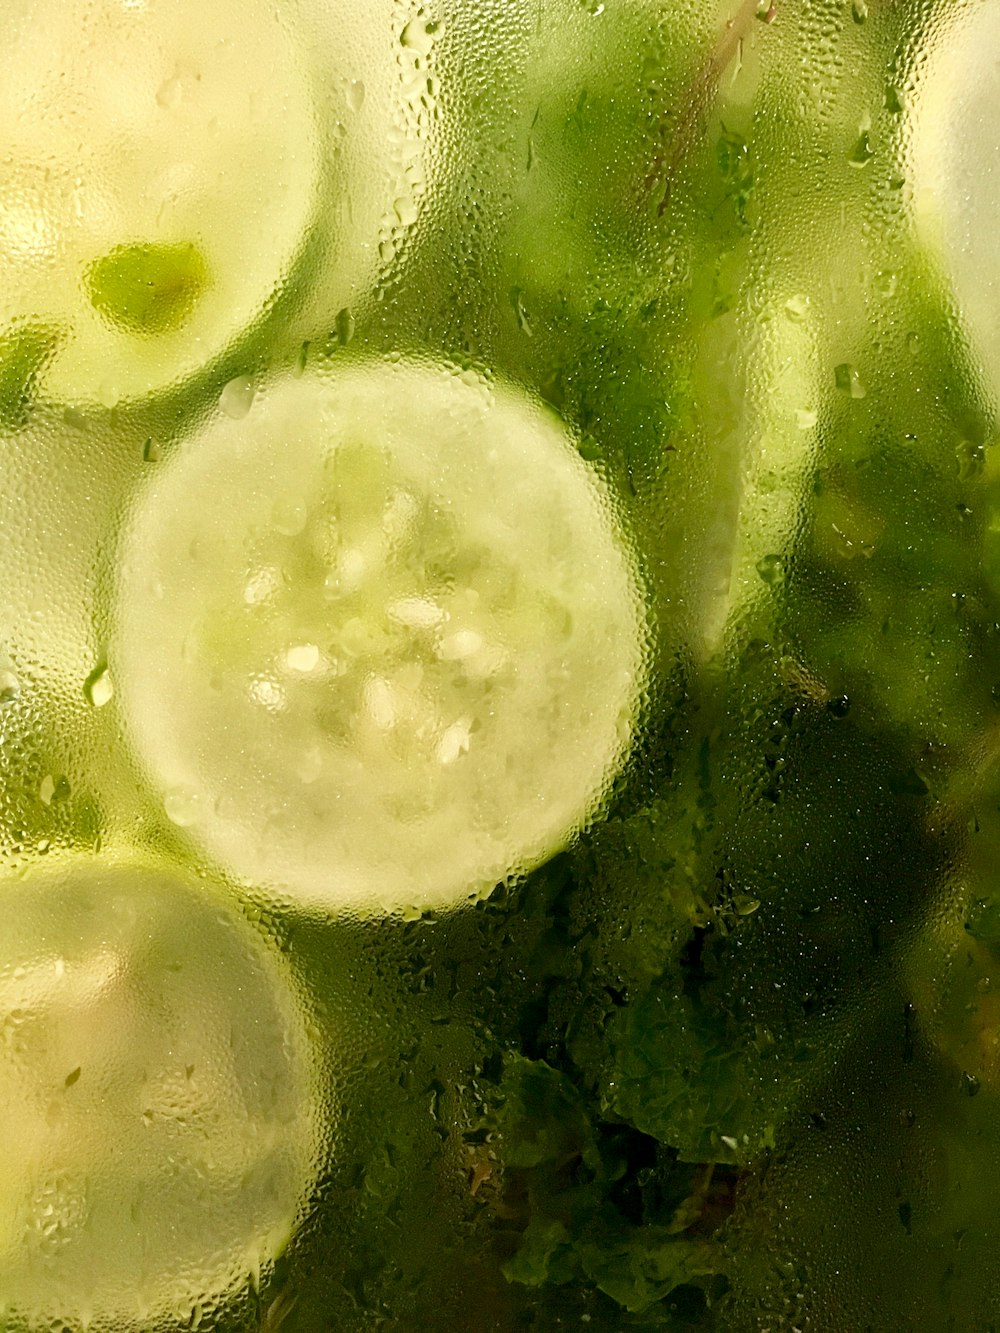 pepino fatiado e vegetais de folhas verdes em recipiente com umidade